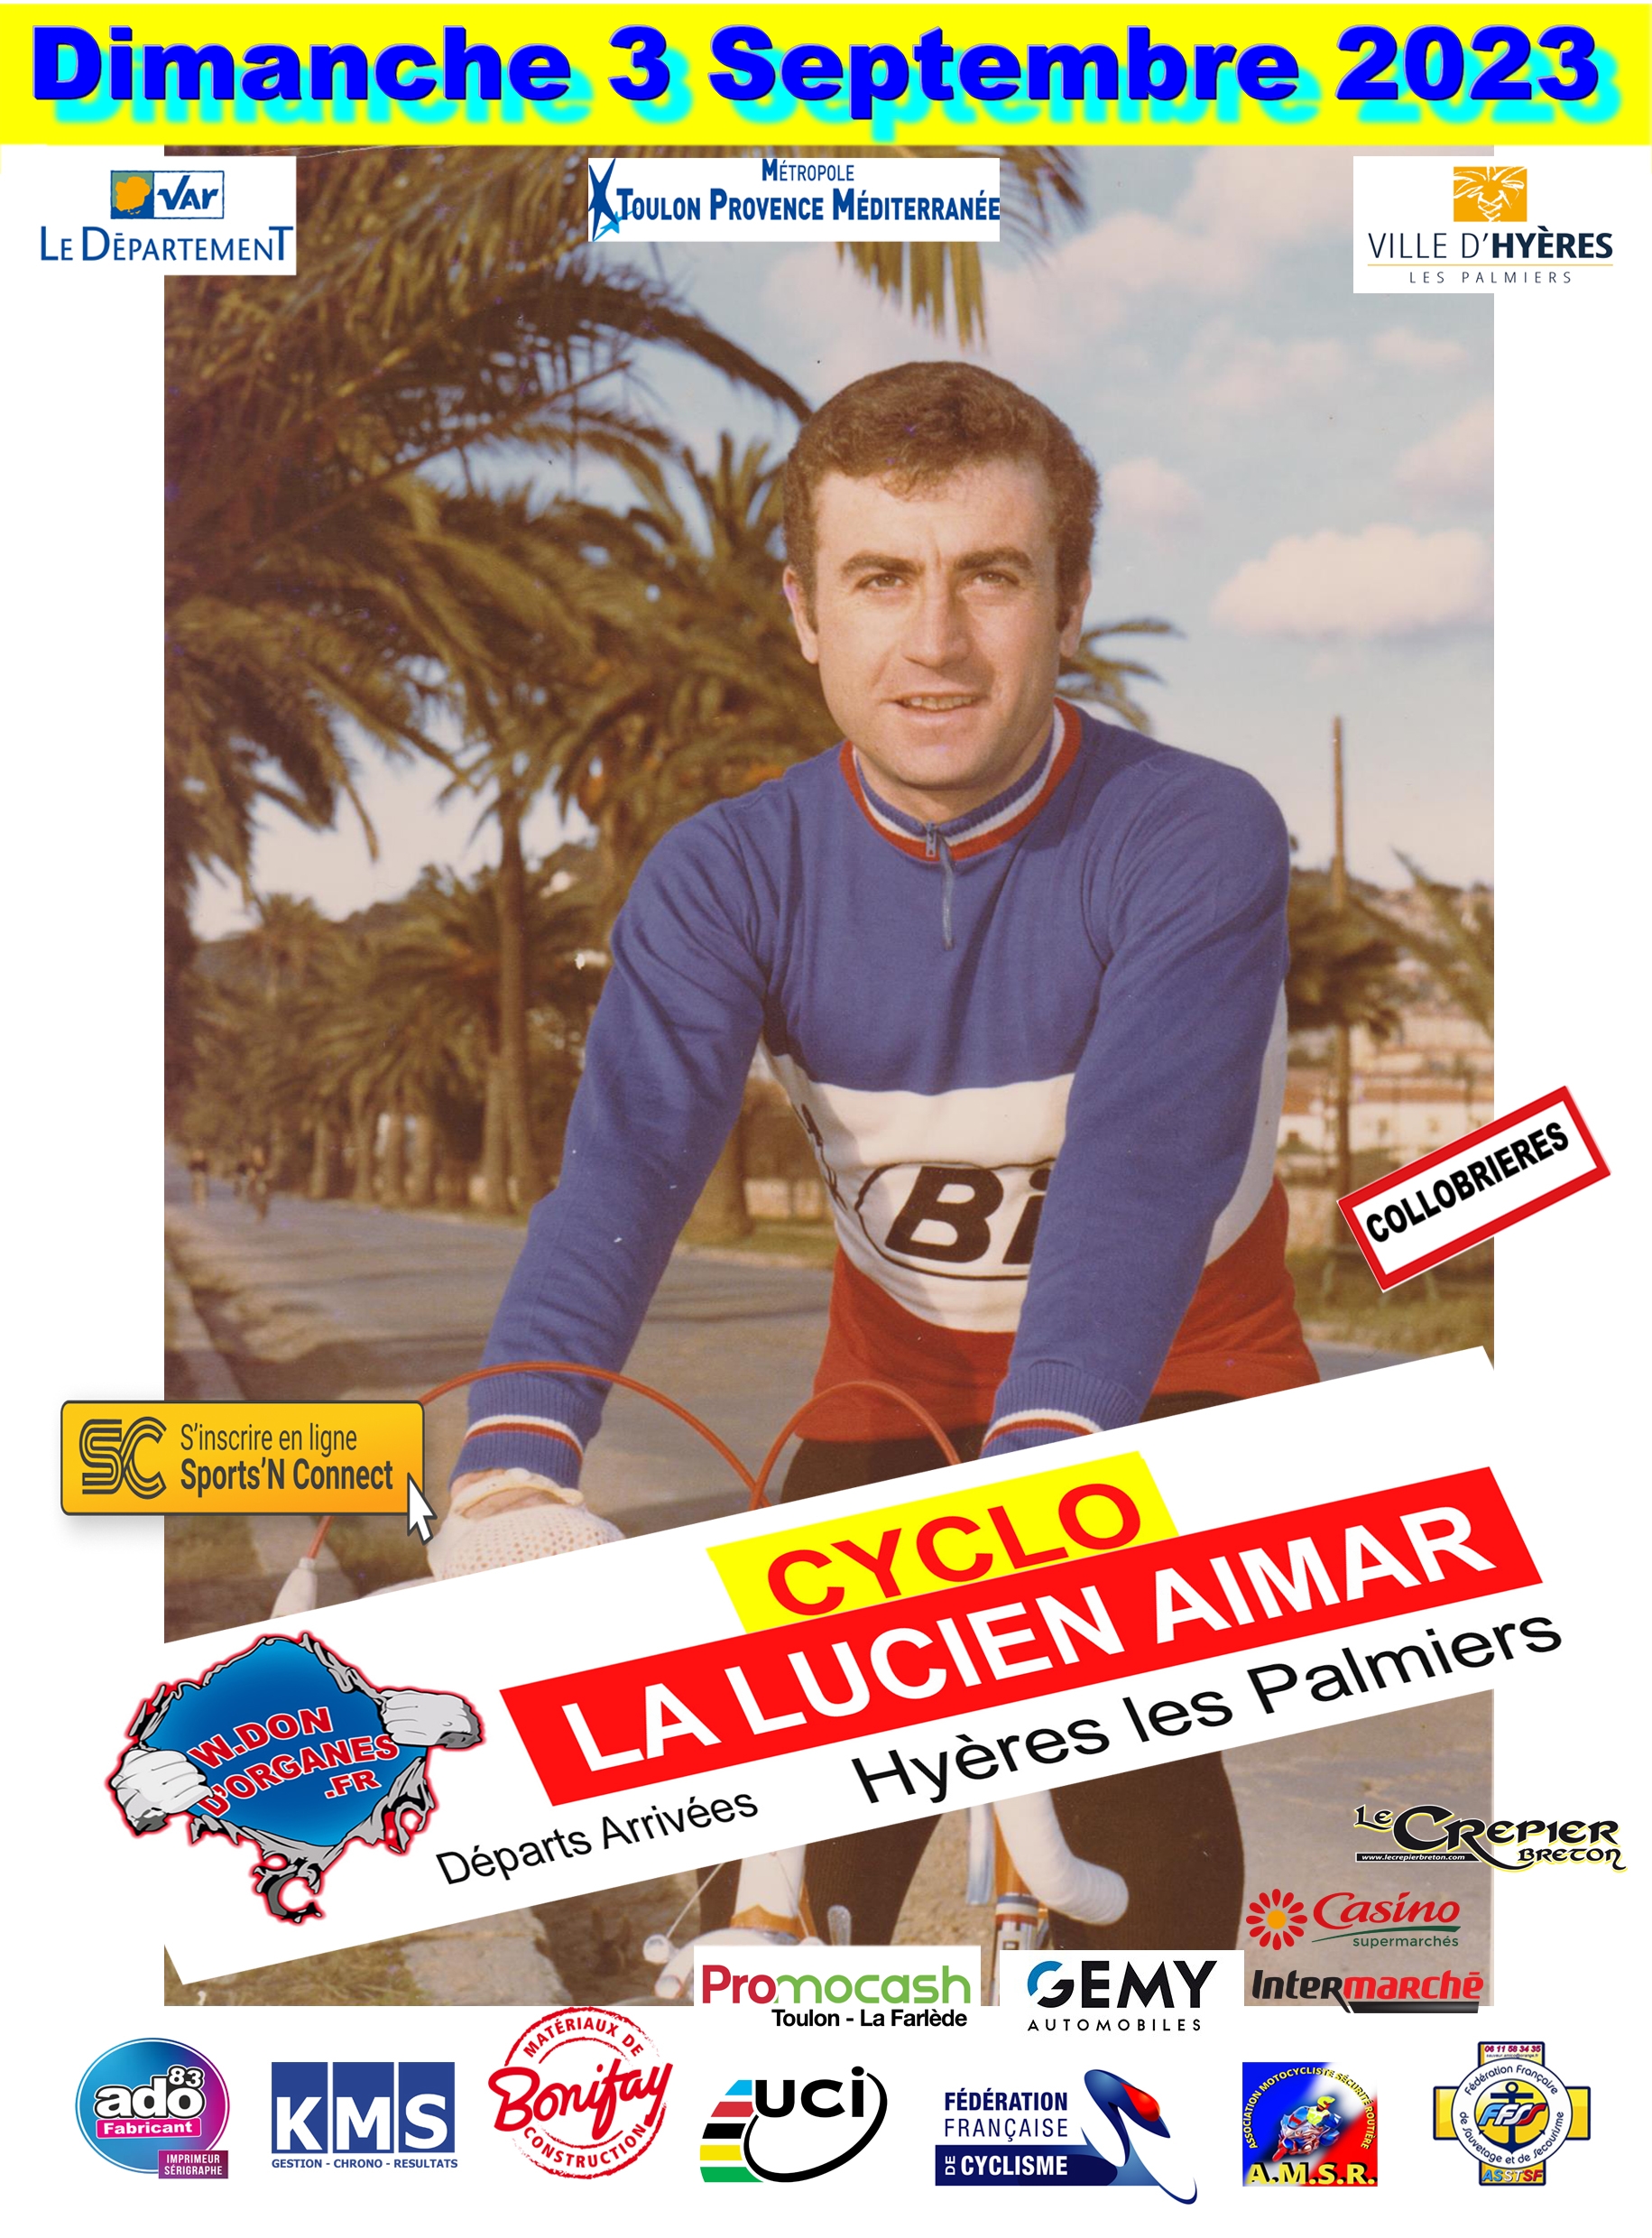 La Lucien Aimar